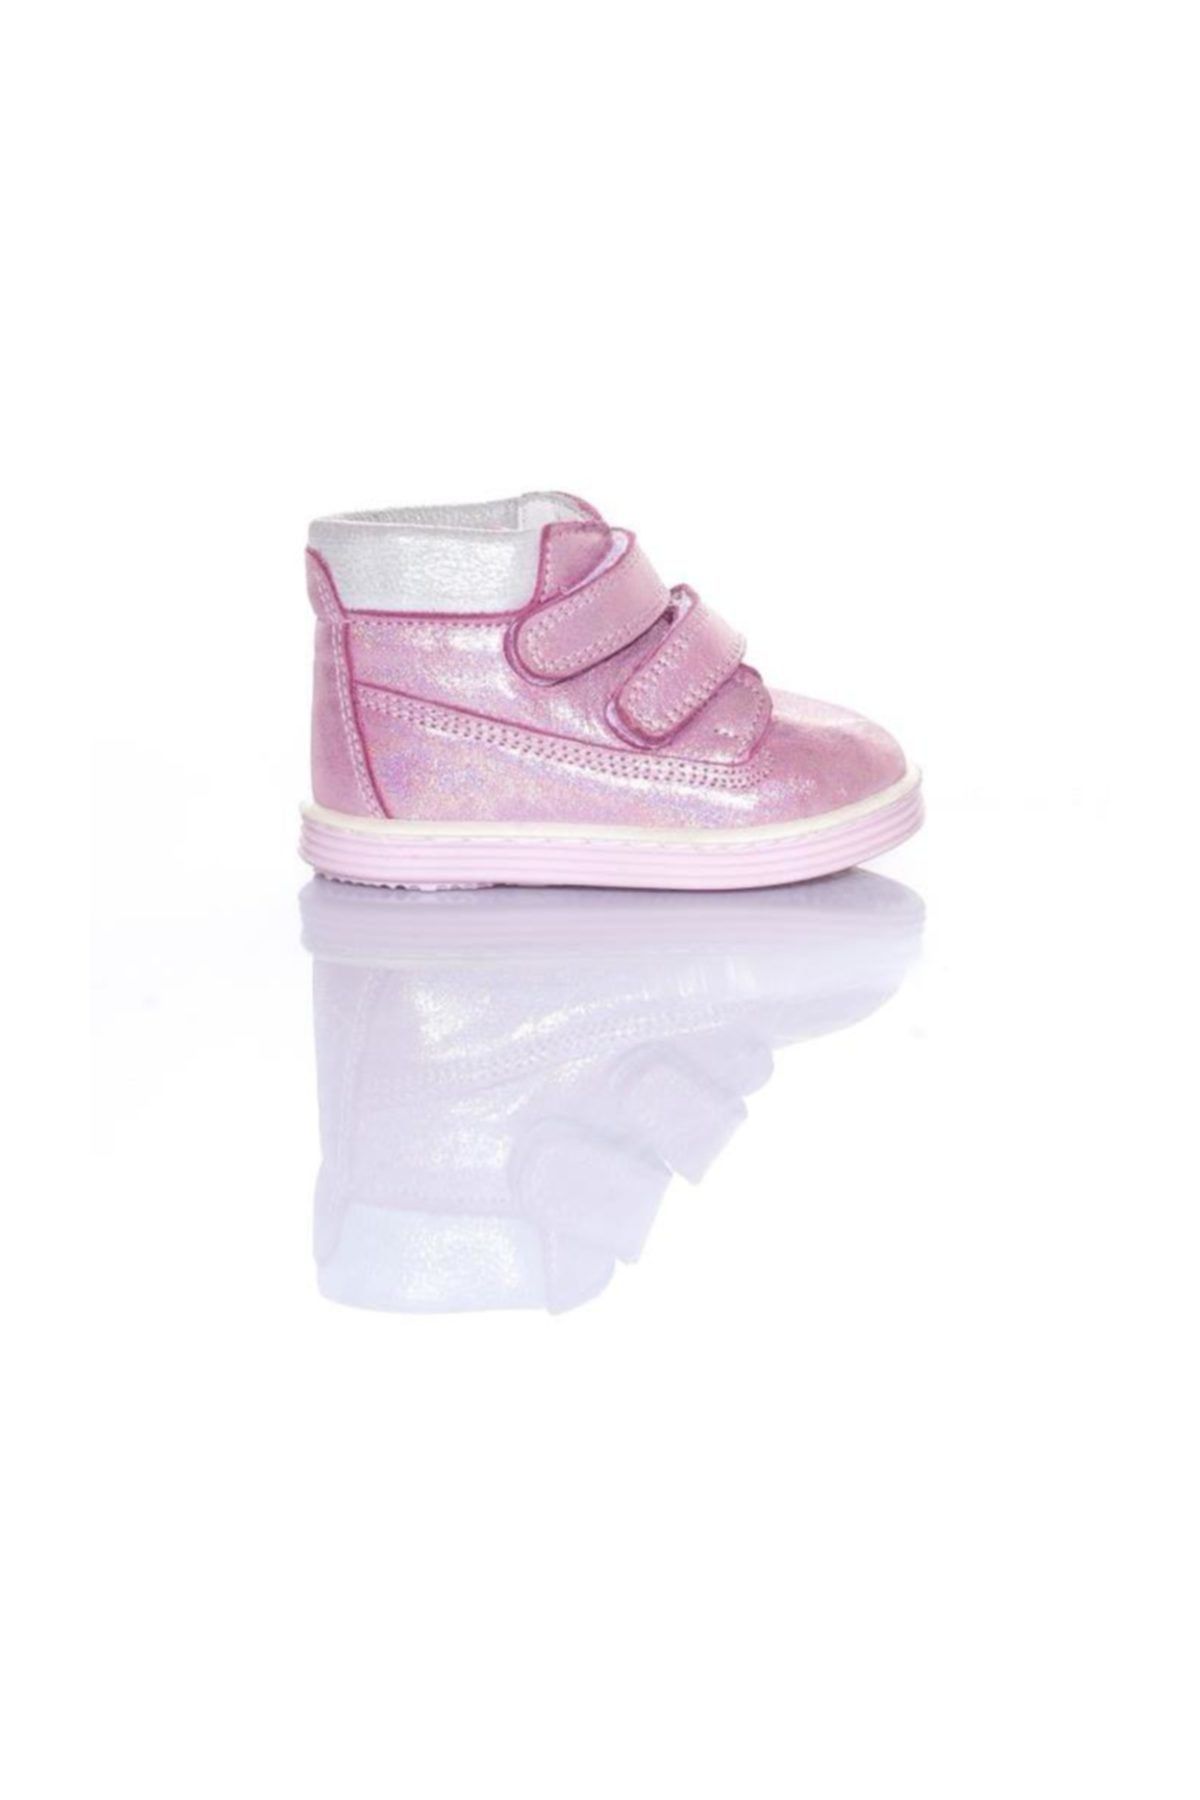 WSTARK Kız Bebek Parlak Pembe Hakiki Deri Bebek Bot Ayakkabı Ws 3050